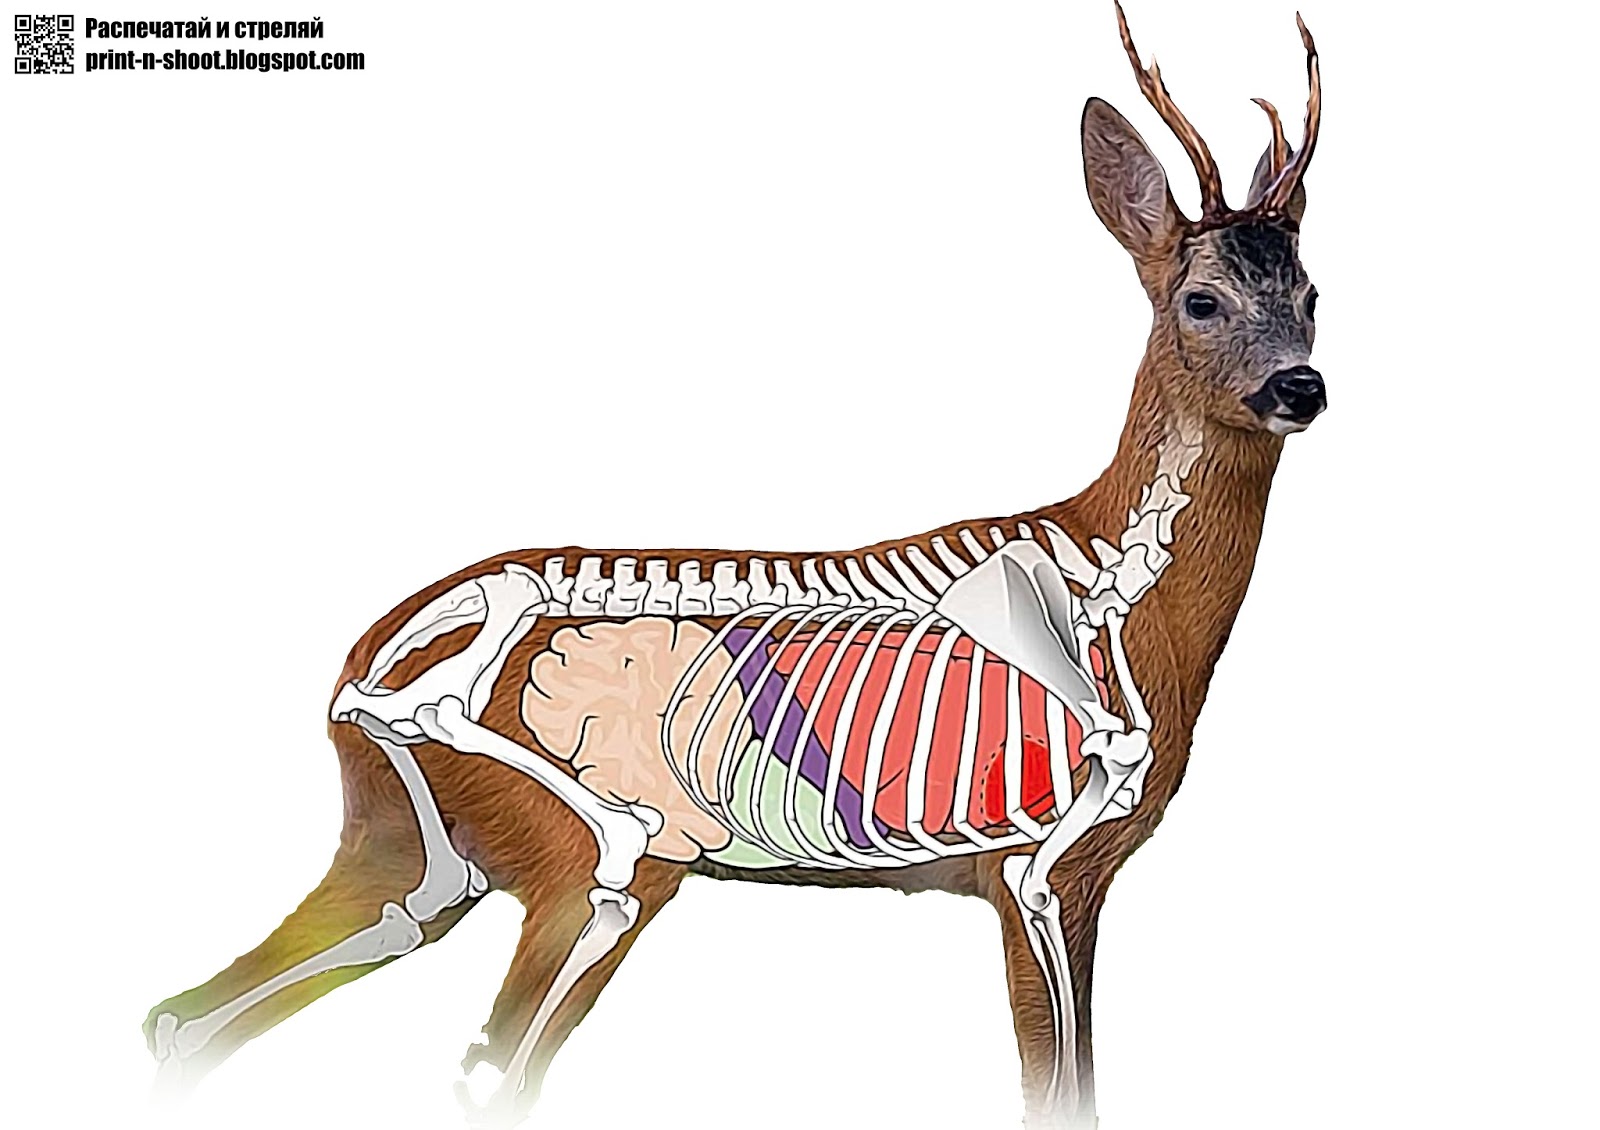 Орган оленя. Анатомия оленя косули. Анатомия сибирской косули. Анатомия косули скелет. Скелет оленя сбоку.